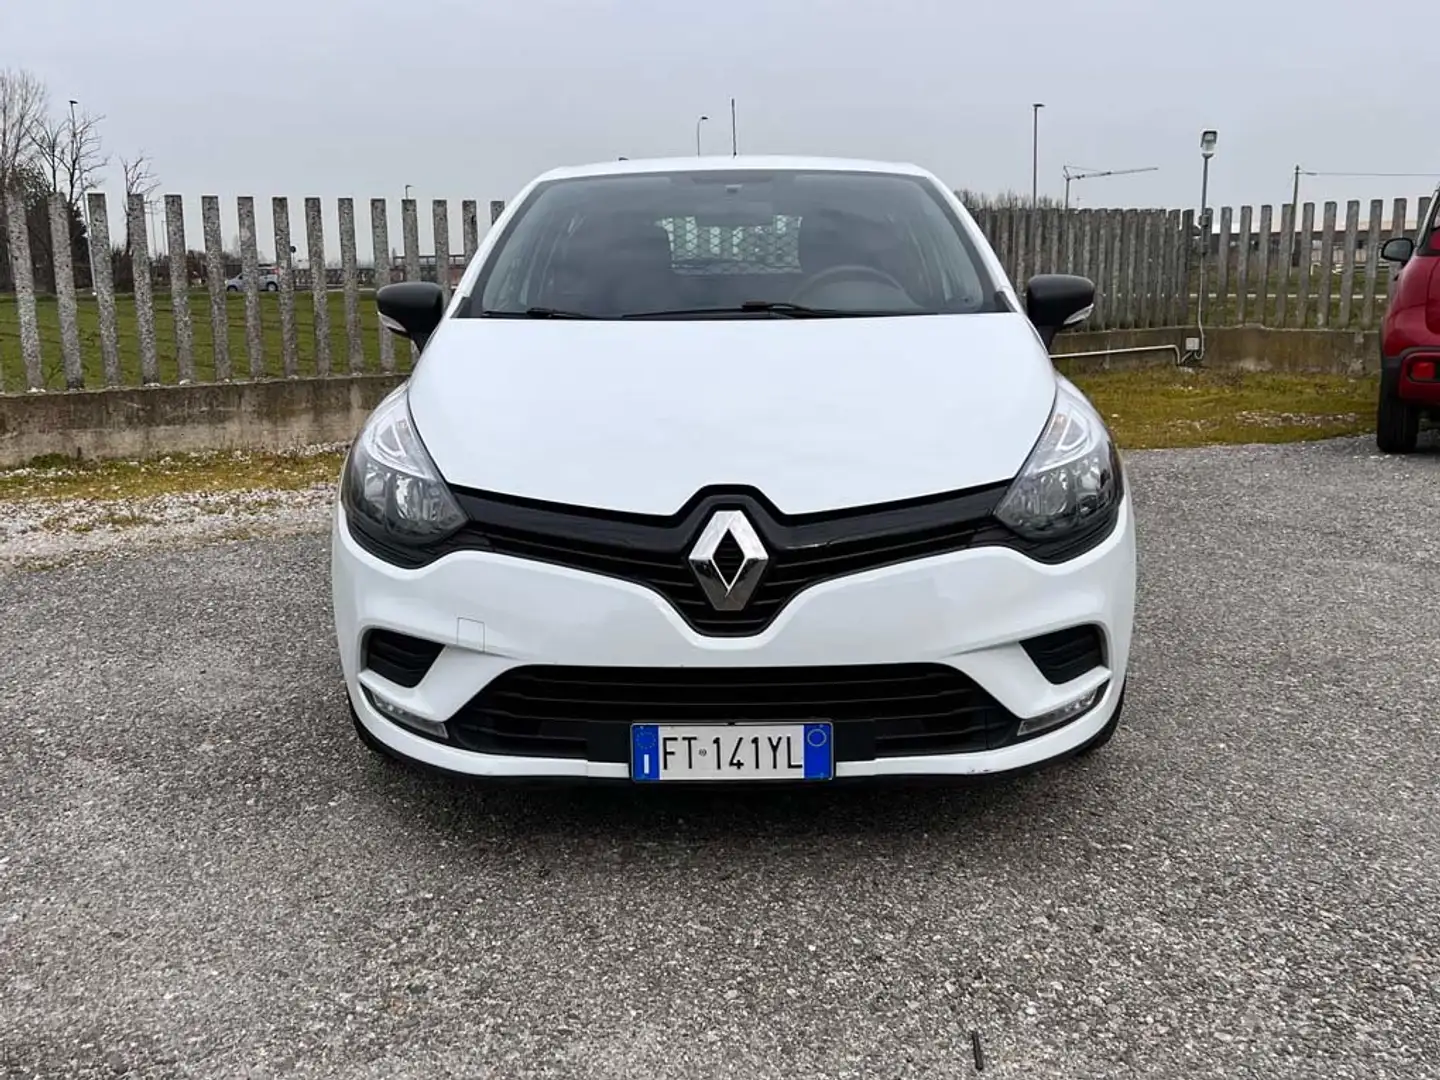 Renault Clio usata a Cremosano - Crema - Cr per € 10.500,-